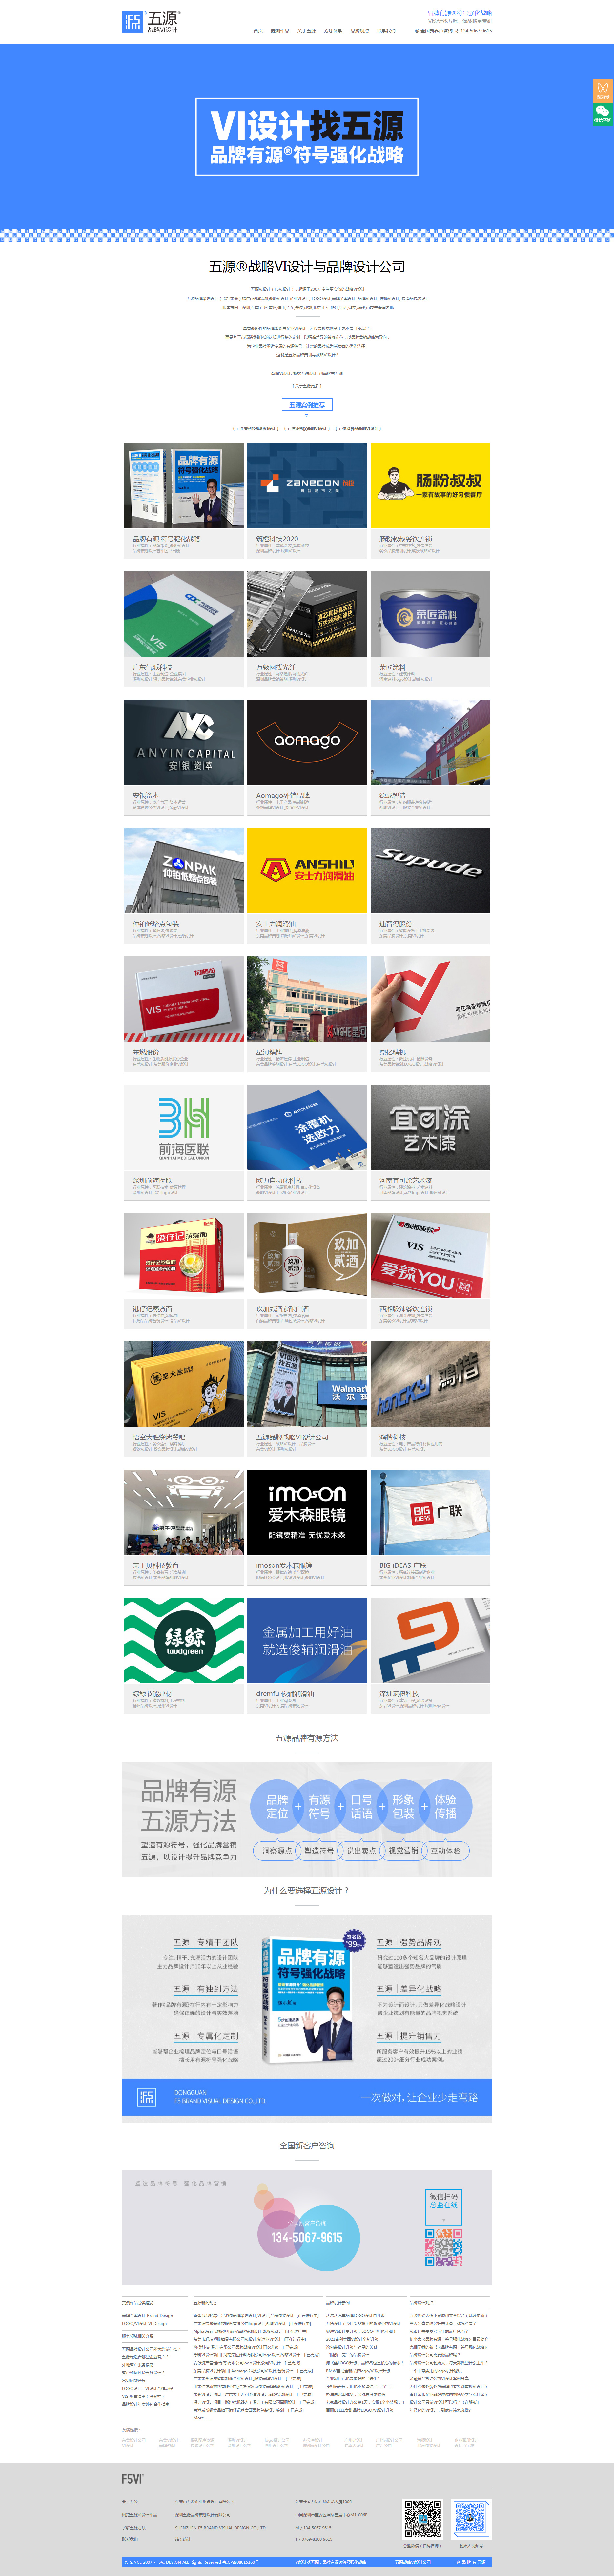 东莞五源企业形象设计网站设计效果图